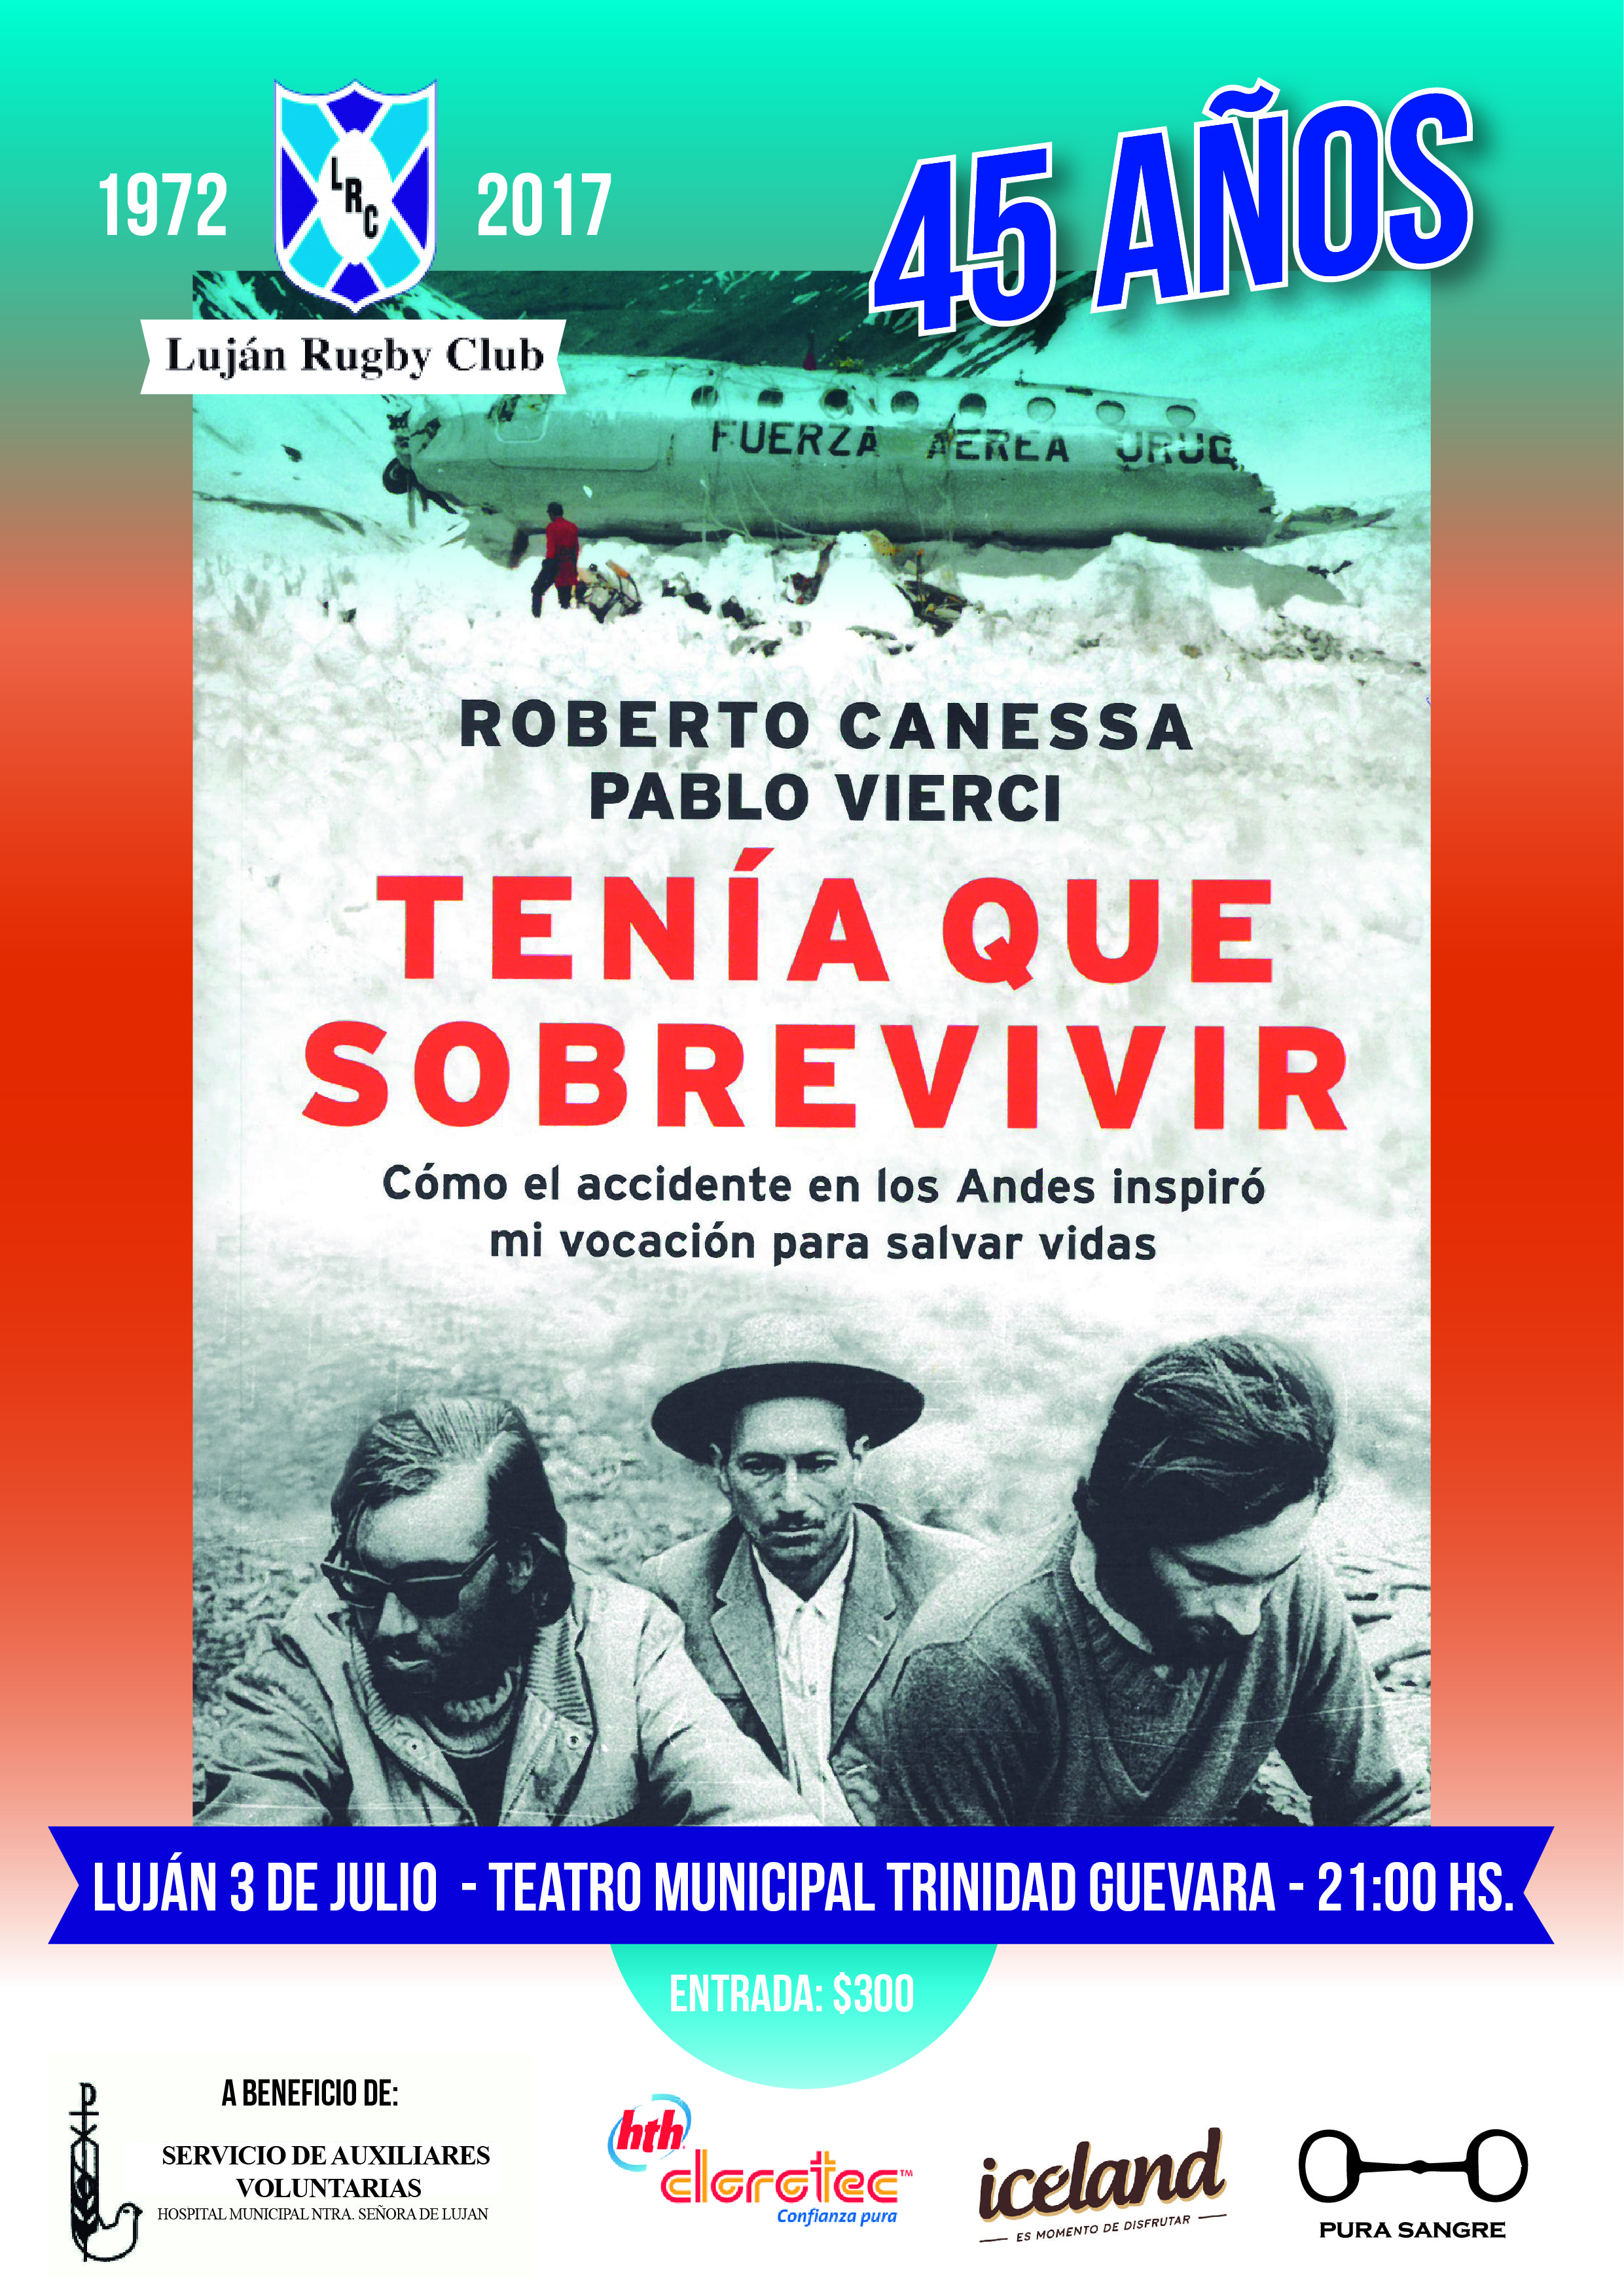 Luján Rugby Club mañana presentará a Roberto Canessa y su libro “Tenia que  sobrevivir” – Tribuna del pueblo